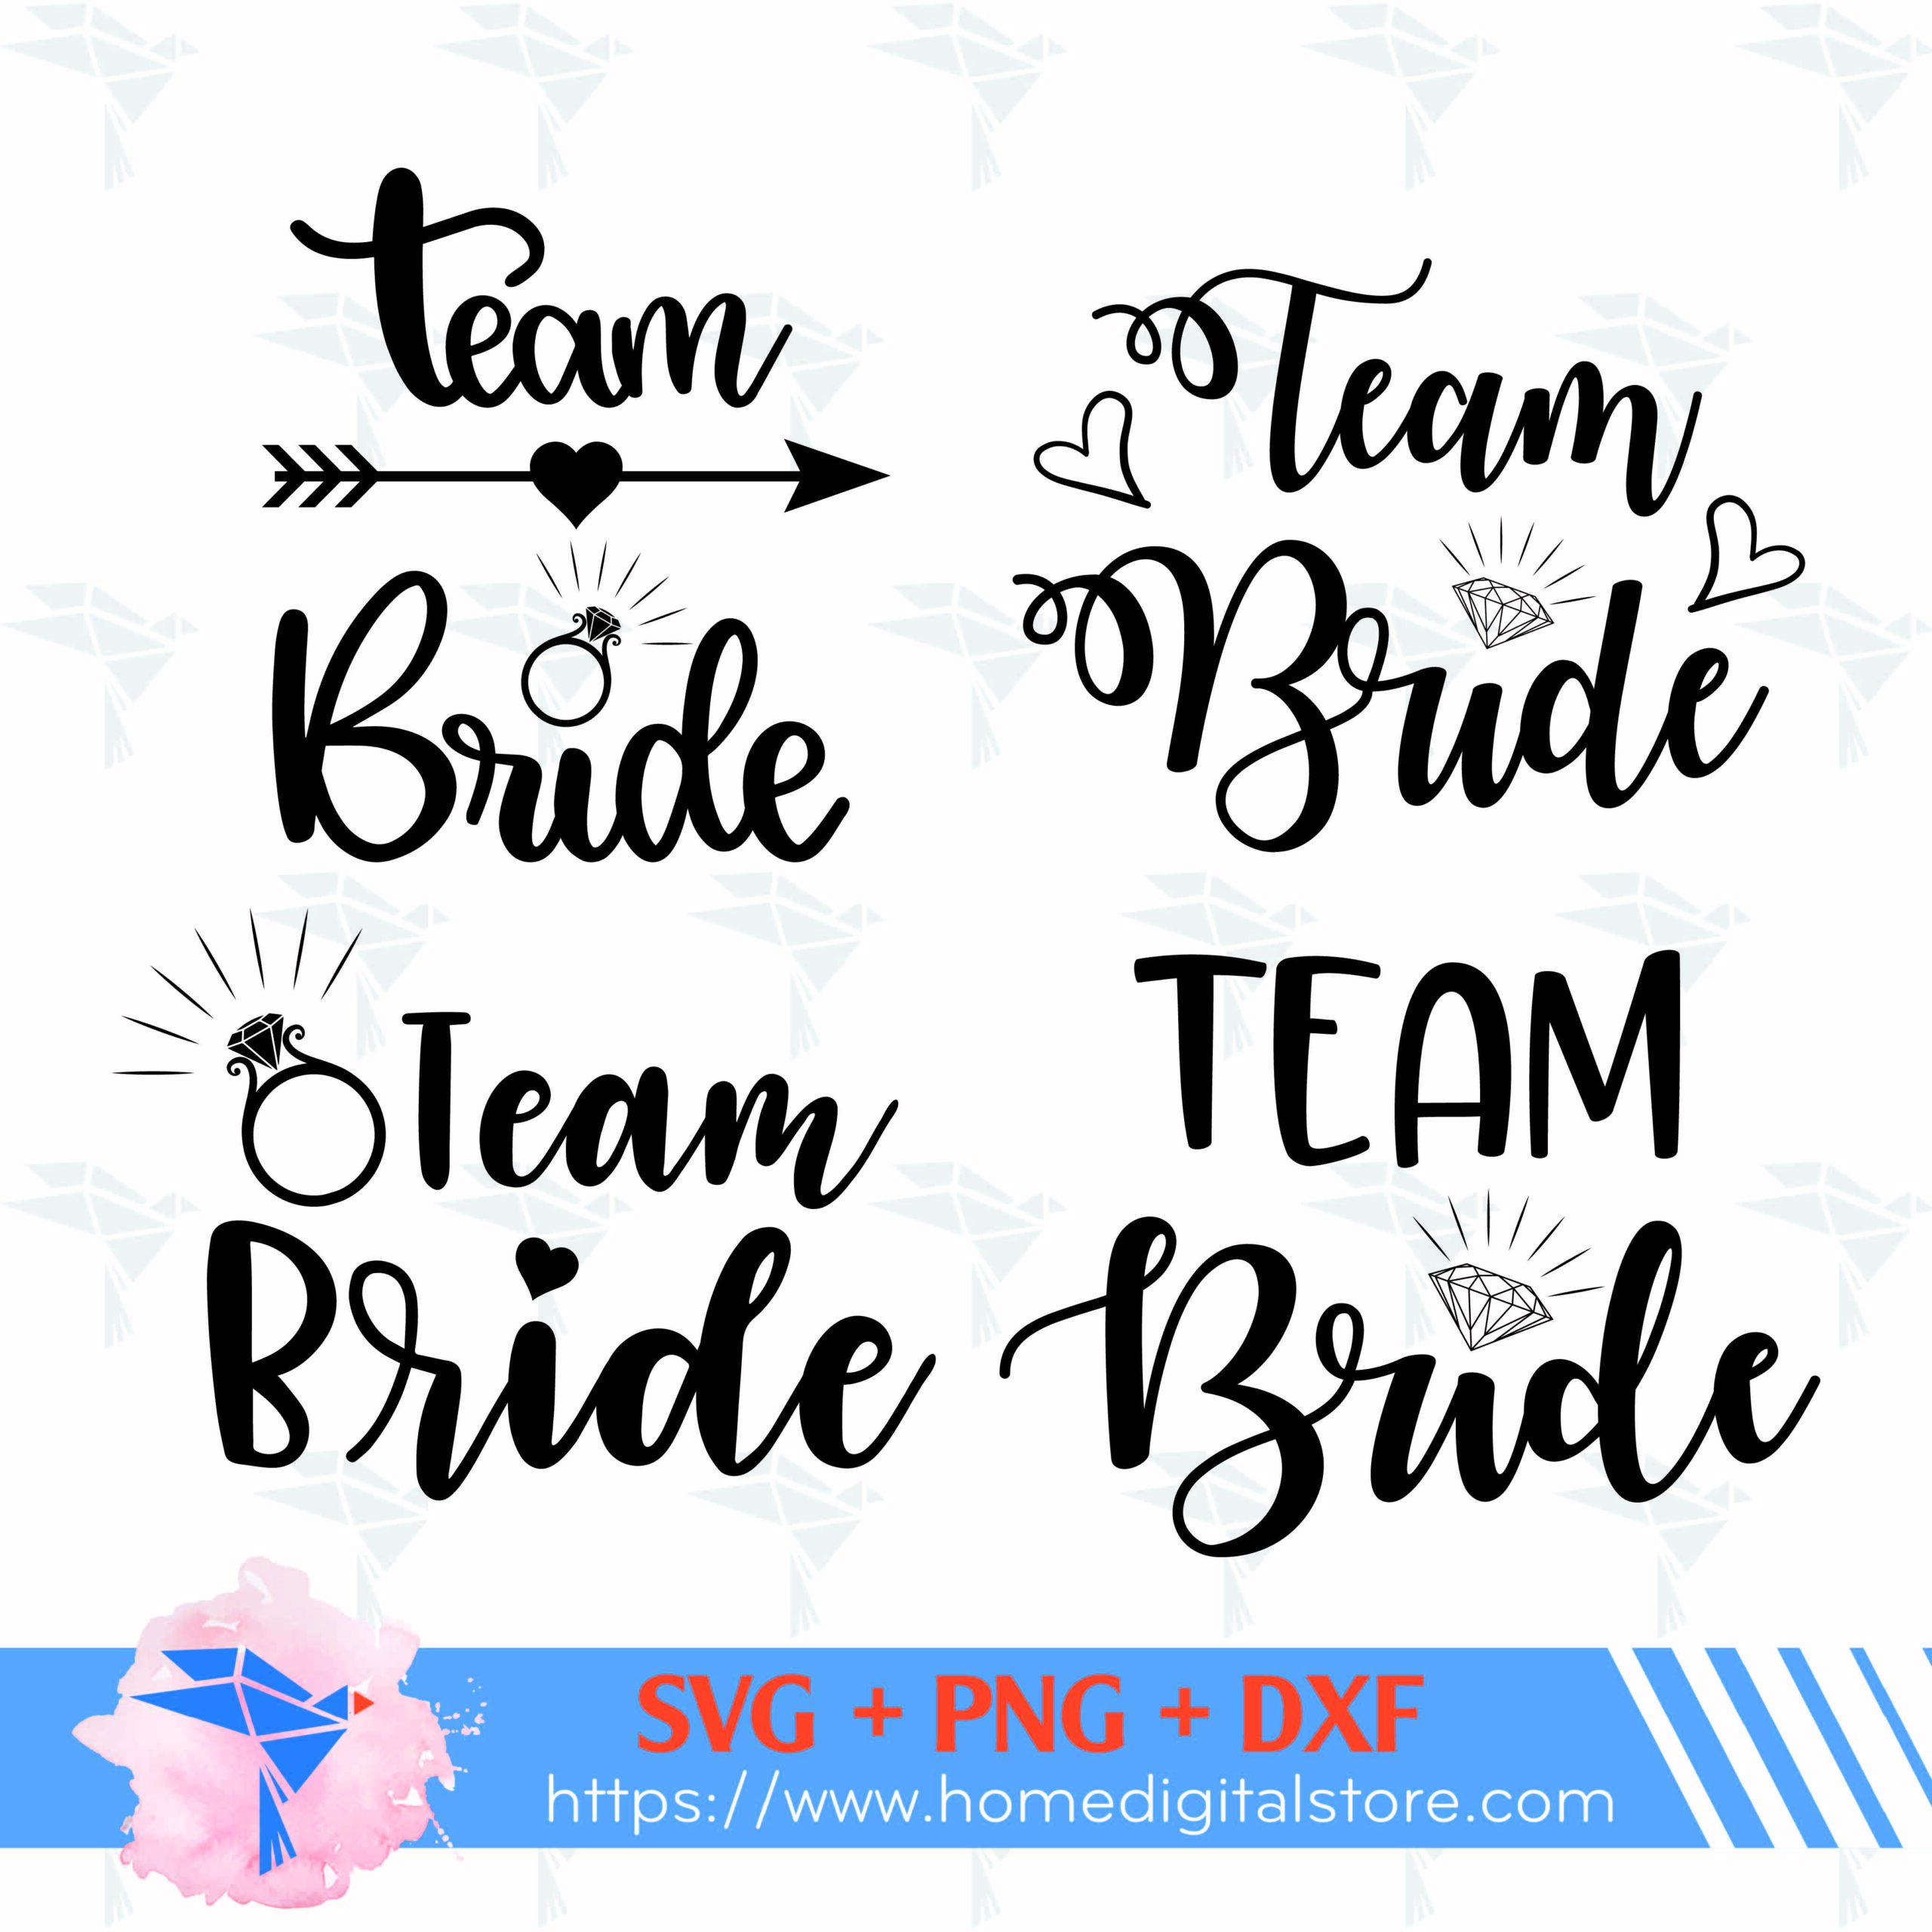 The Team Bride and Bridesmaid Wedding SVG Vector Design